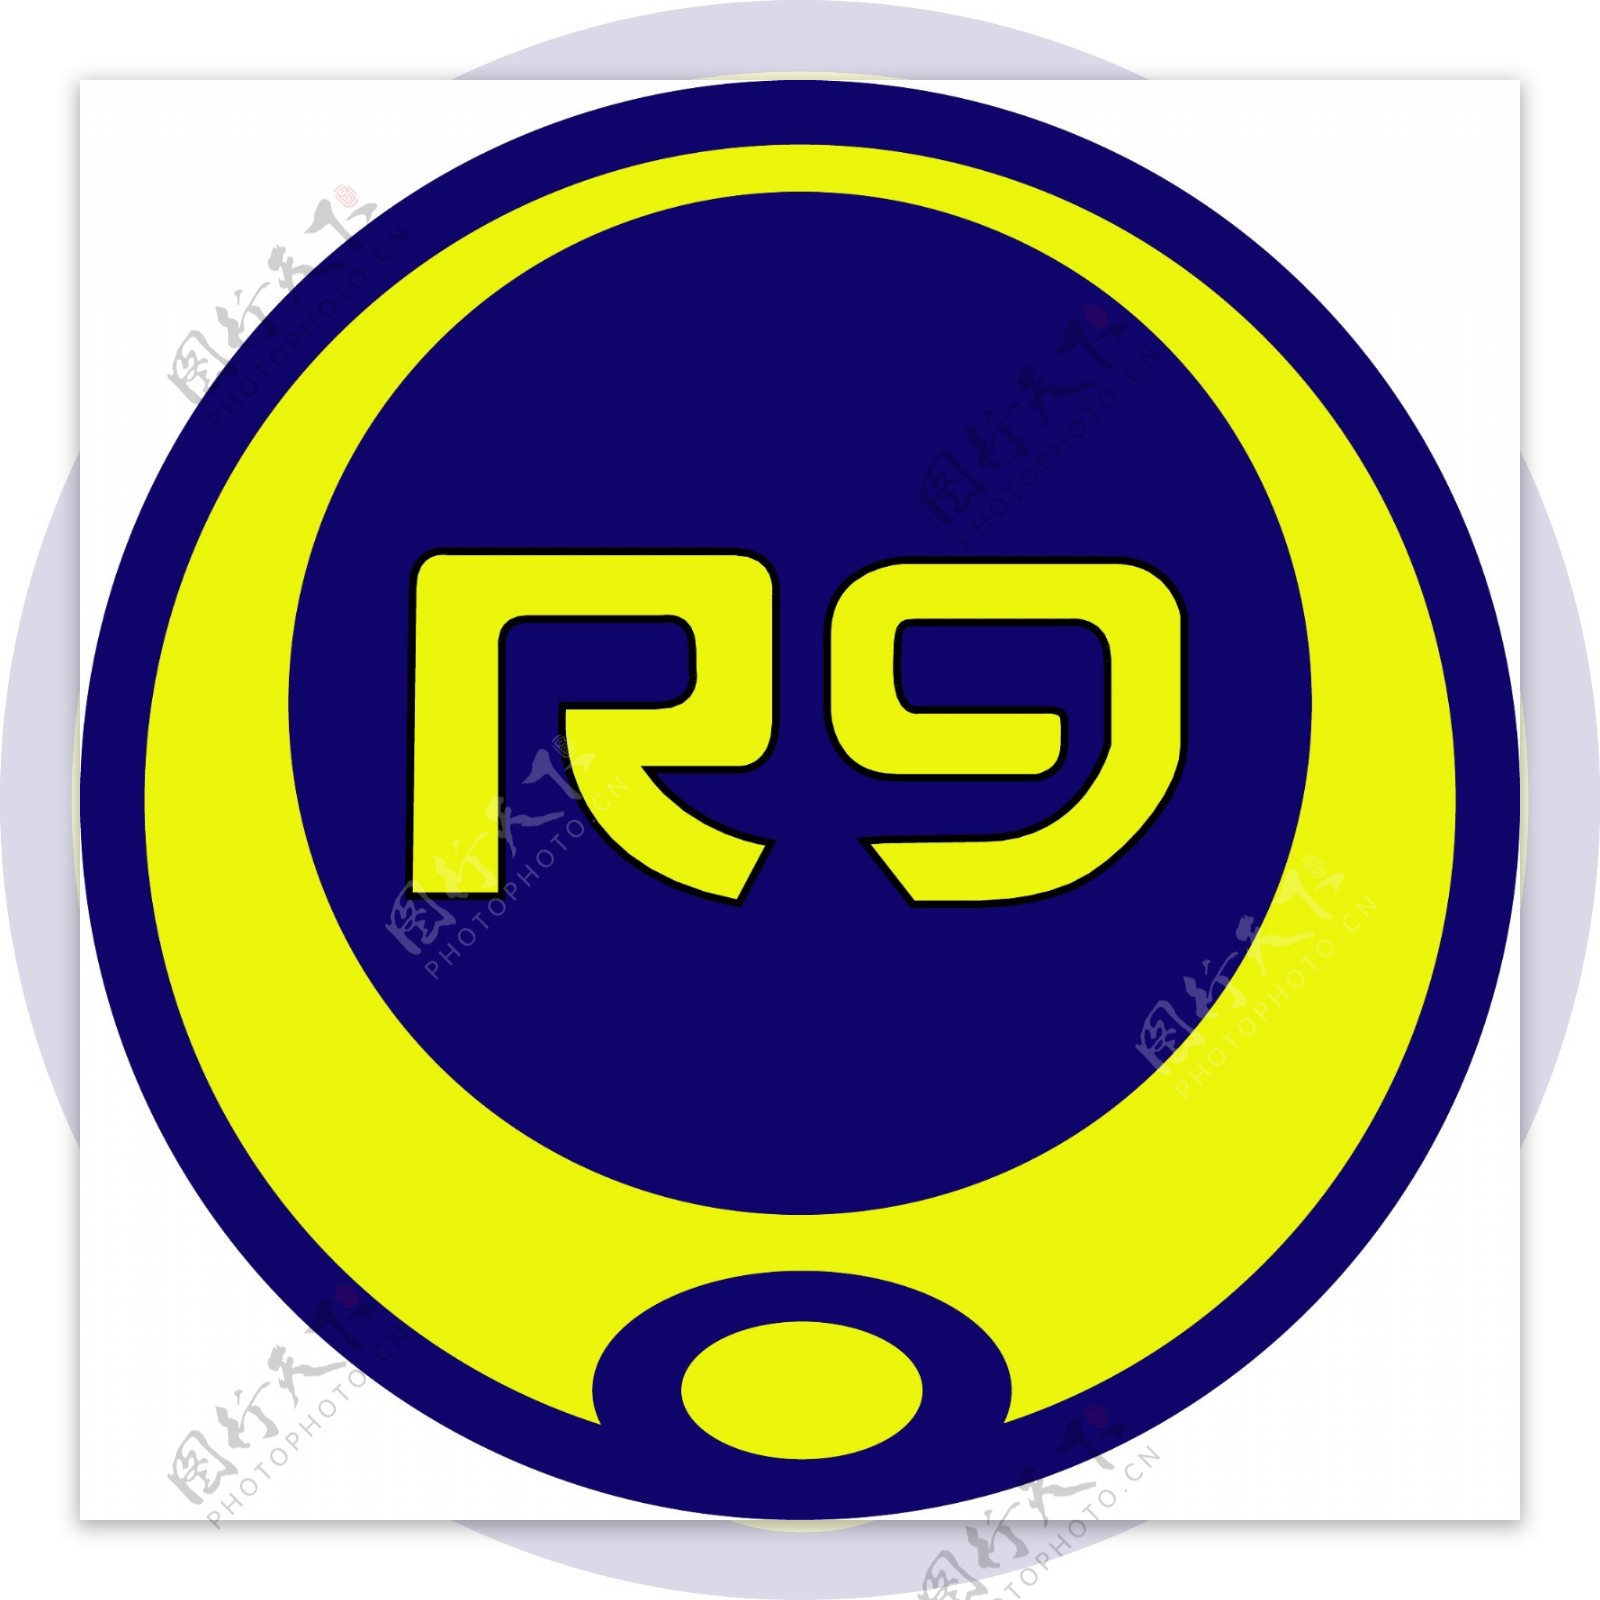 罗纳尔多R9